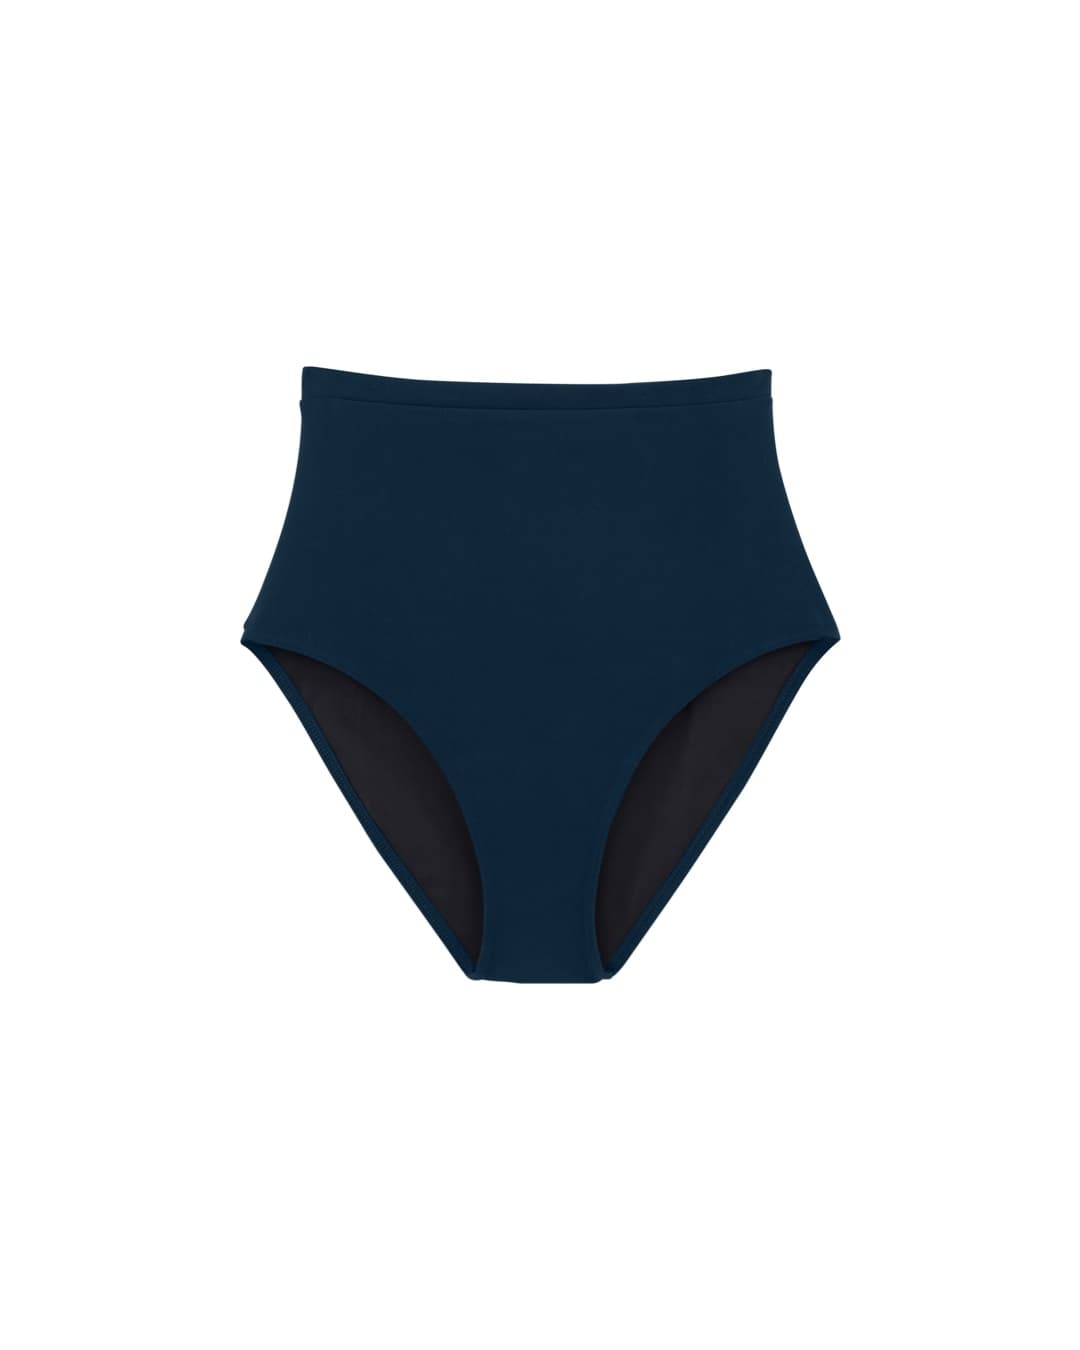 Chlore Swimwear - DANNY Maillot de Bain Deux-pièce Culotte Taille Haute - Bleu Piscine